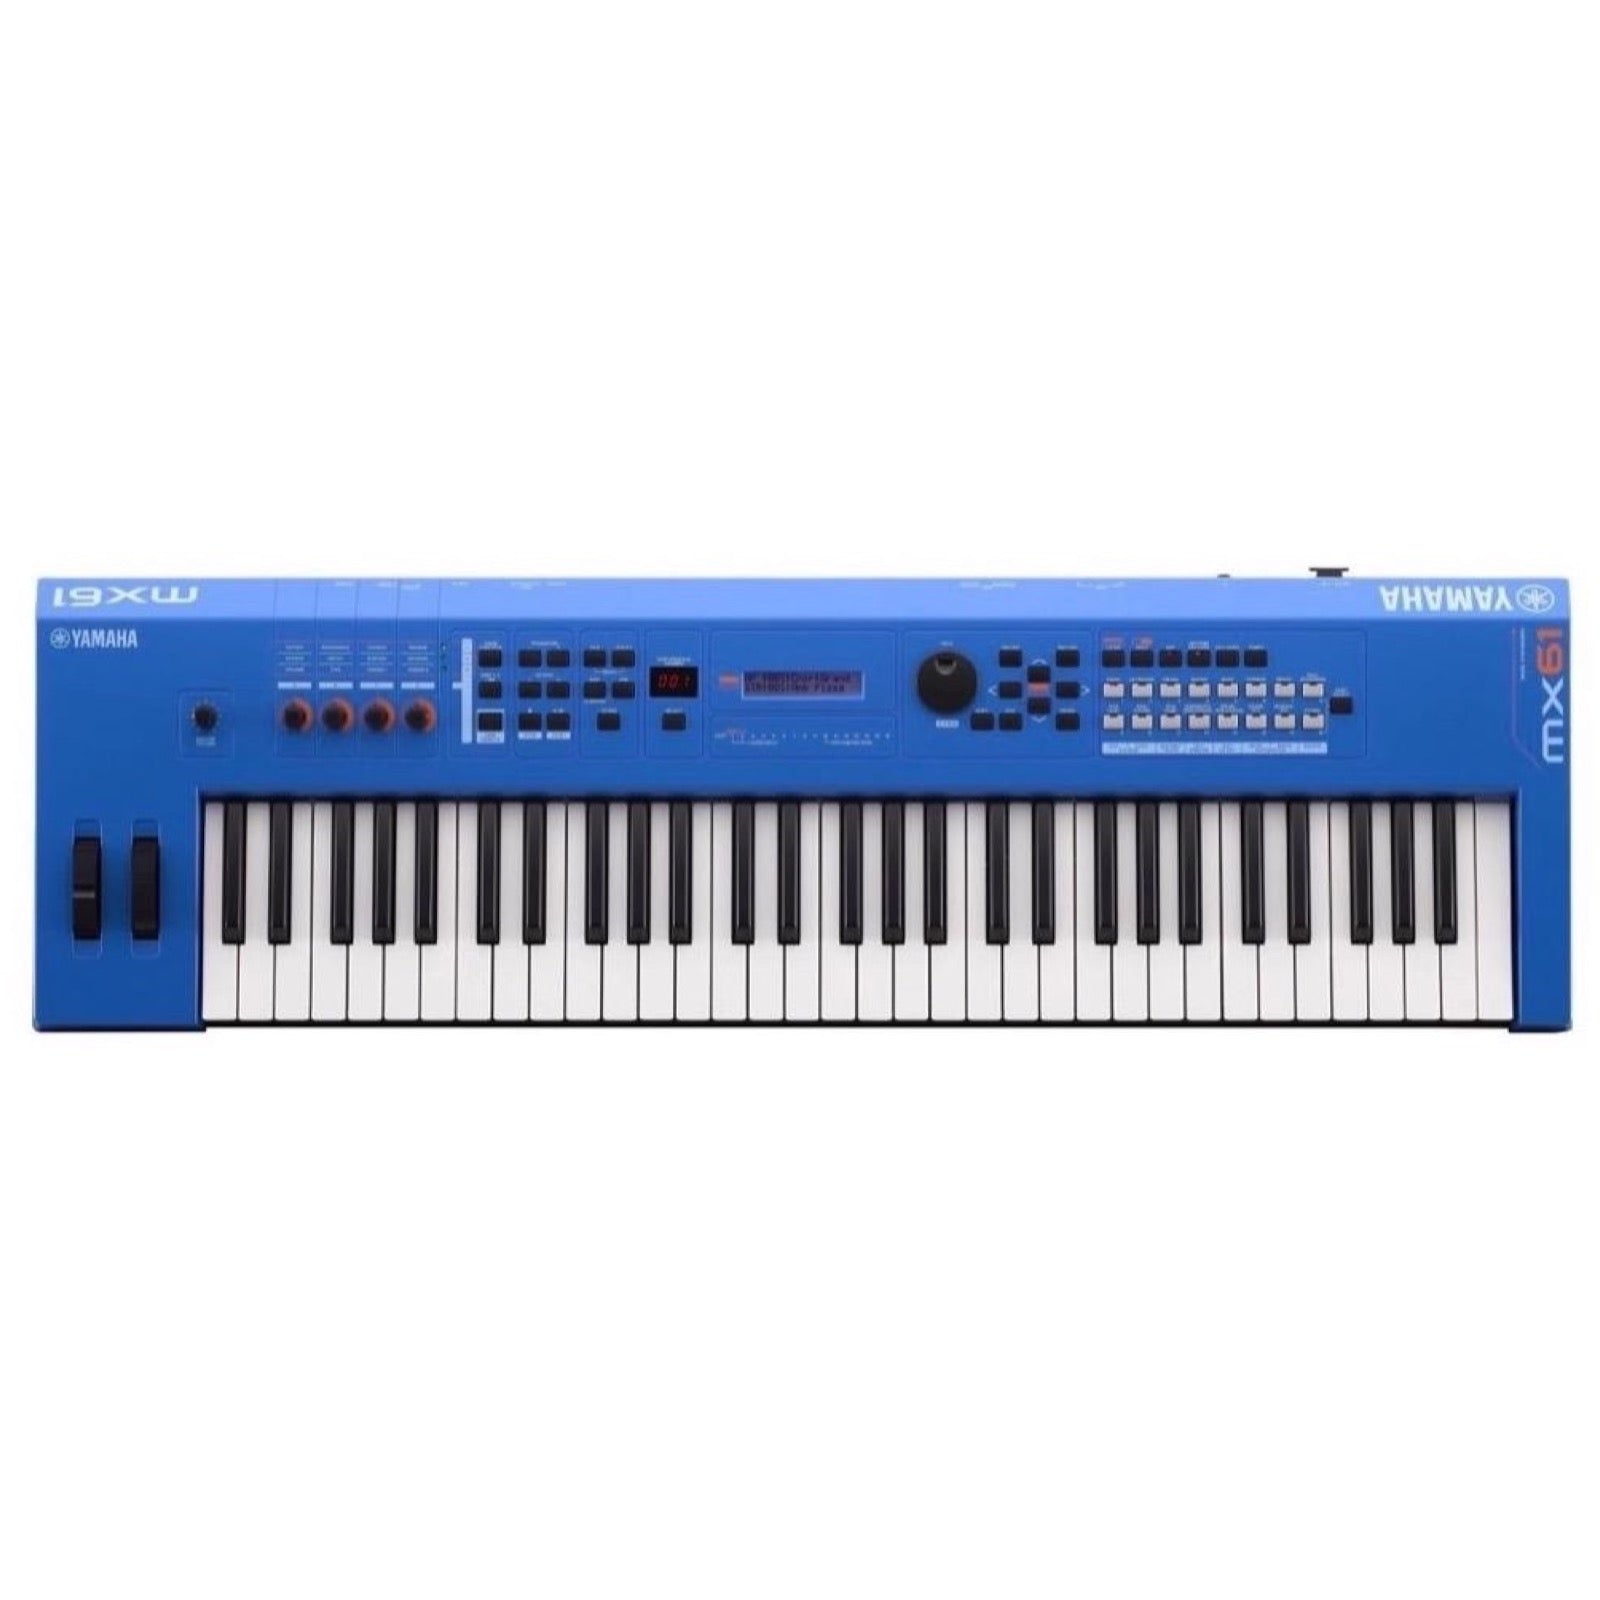 Yamaha MX61 v2 Keyboard Synthesizer, 61-Key, Blue – Same Day Music